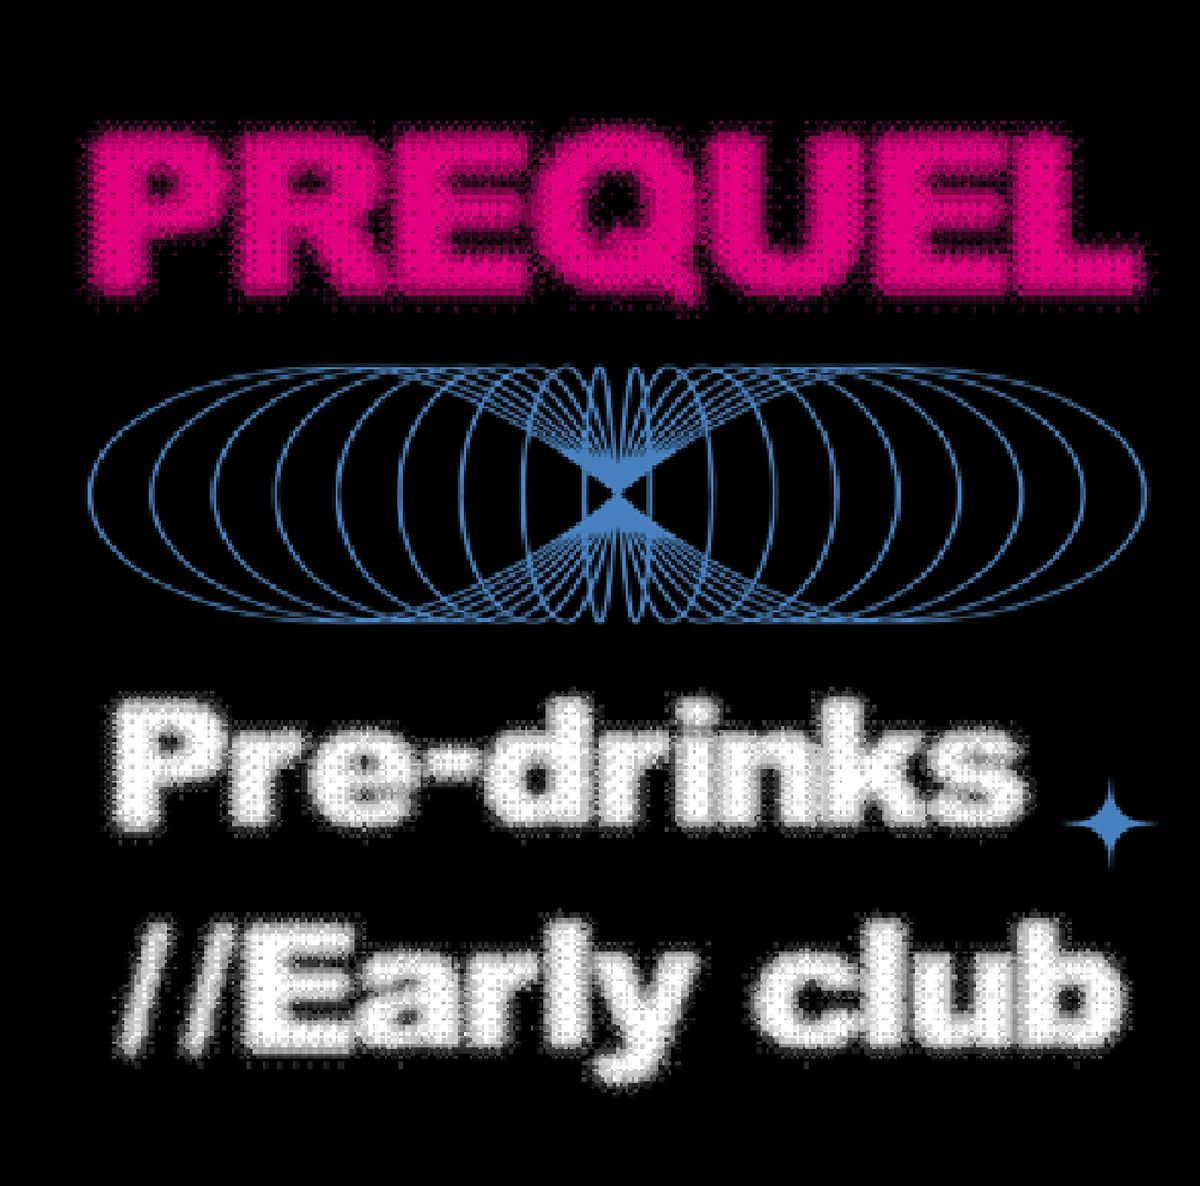 Prequel Sydney Predrinks Club \/\/ Early Club